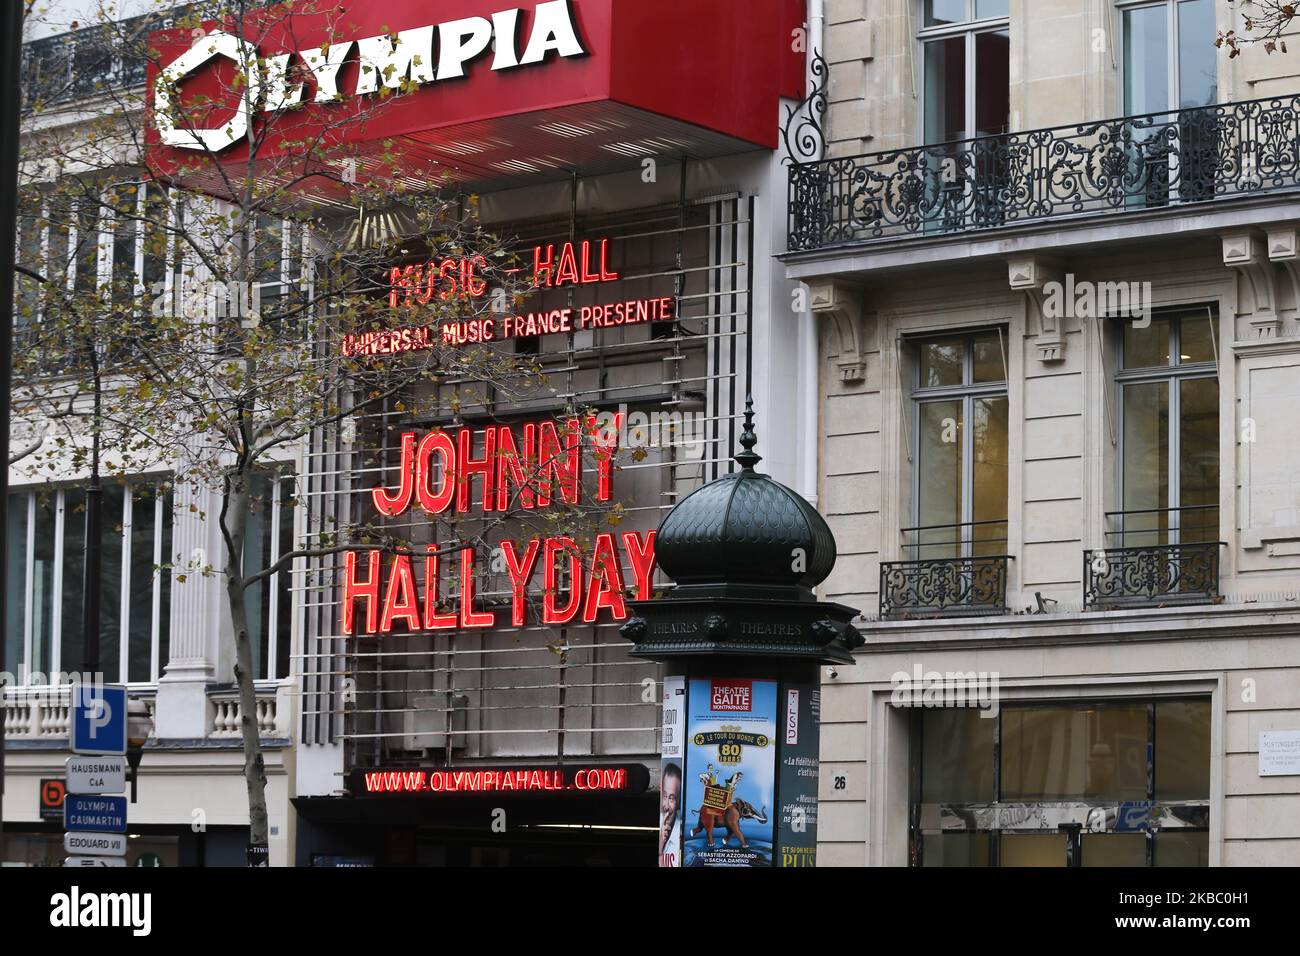 Am 1. Dezember 2019, fast zwei Jahre nach dem Tod dieser Legende französischer Musik, wurde dem französischen Sänger Johnny Hallyday in der Olympia Hall in Paris, Frankreich, eine Hommage gewidmet. Aus diesem Anlass leuchteten die Buchstaben seines Namens in den Neonlichtern der berühmten Fassade des Olympia in Rot. Johnny Hallyday starb in der Nacht vom 5. 2017. Dezember im Alter von 74 Jahren nach einem Kampf mit Lungenkrebs. (Foto von Michel Stoupak/NurPhoto) Stockfoto